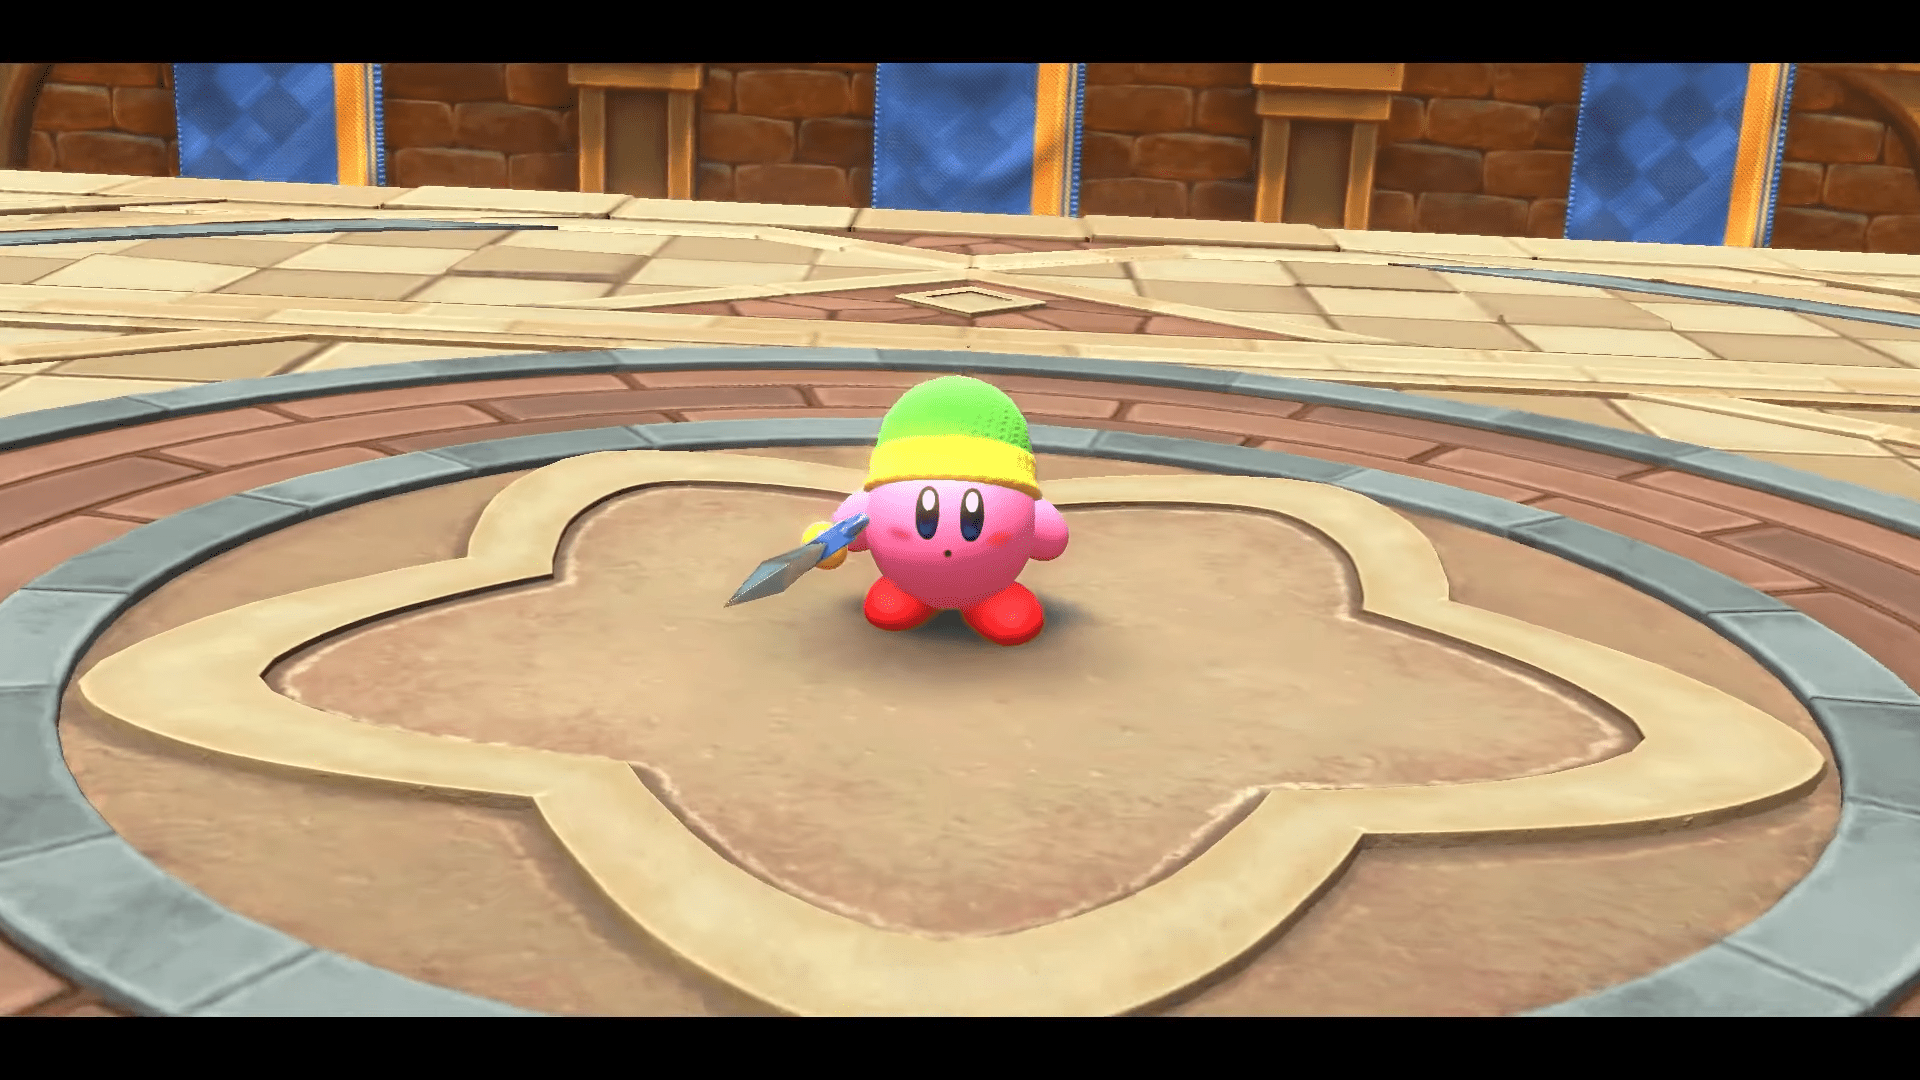 Kirby und das vergessene Land: Nintendo nennt Details zu  amiibo-Kompatibilität - News rund um japanische Videospiele - JPGames  Community